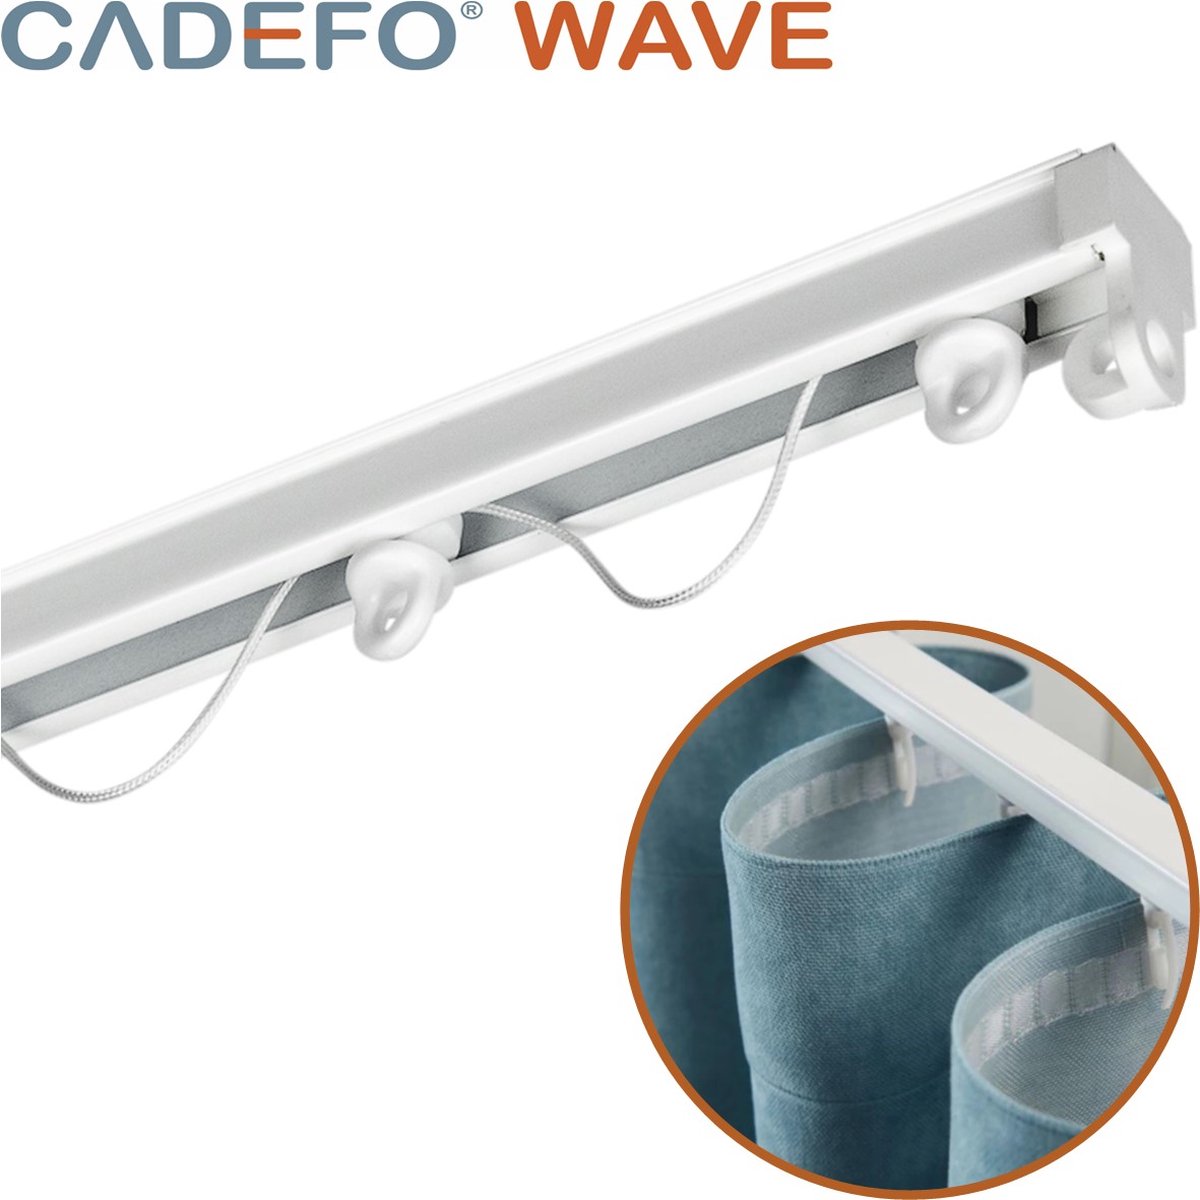 CADEFO WAVE (451 - 500 cm) Gordijnrails - Compleet op maat! - UIT 1 STUK - Leverbaar tot 6 meter - Plafondbevestiging - Lengte 455 cm